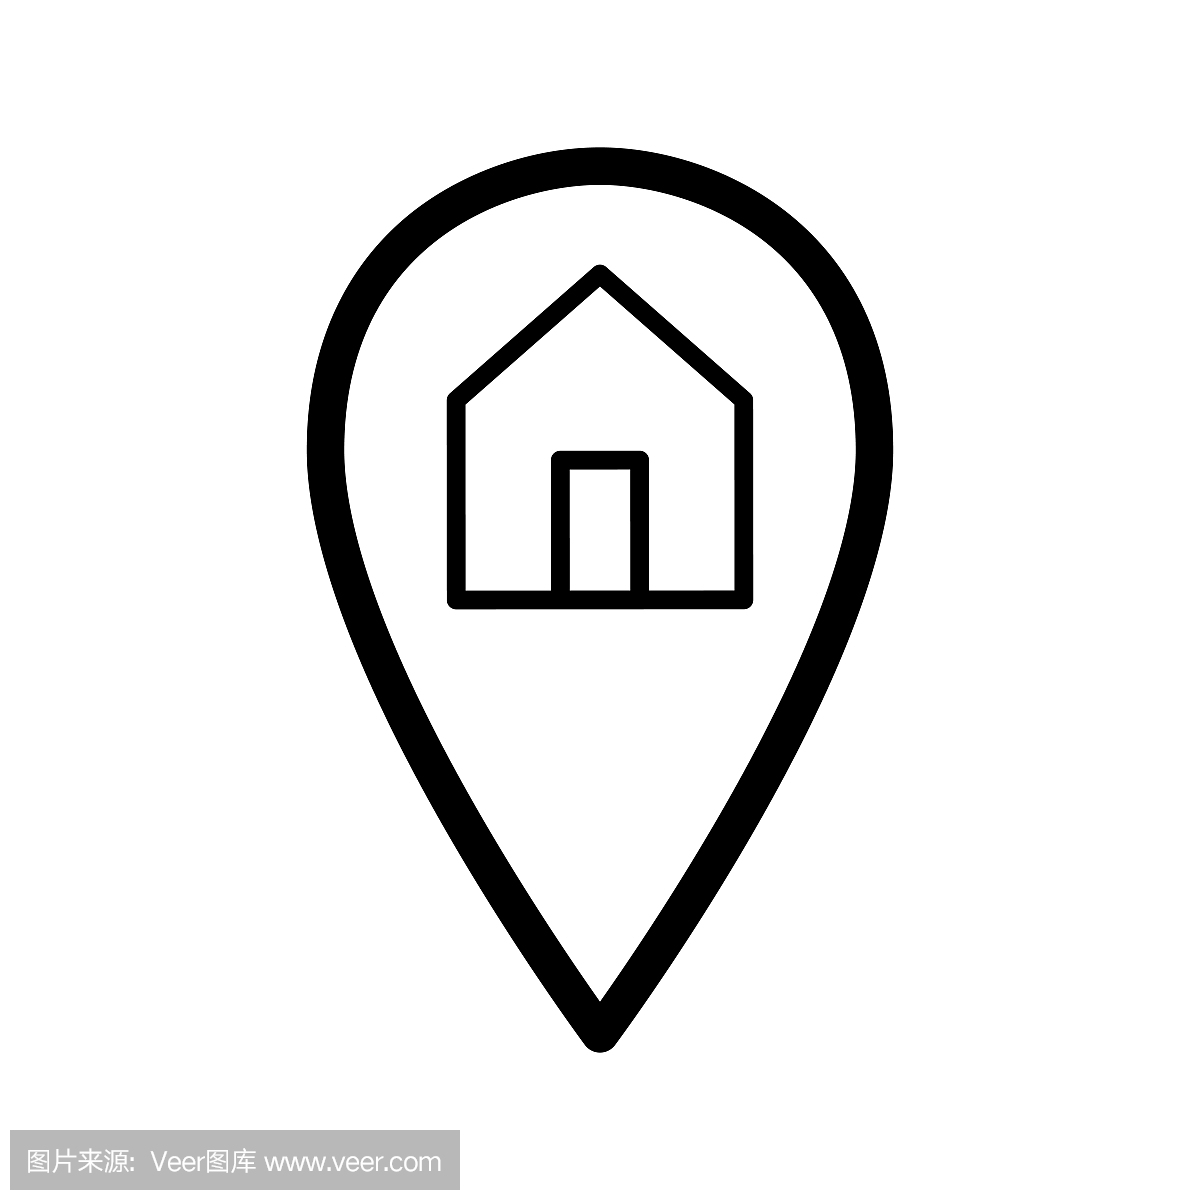 地图指针和房子简单的矢量图标。地理位置的黑